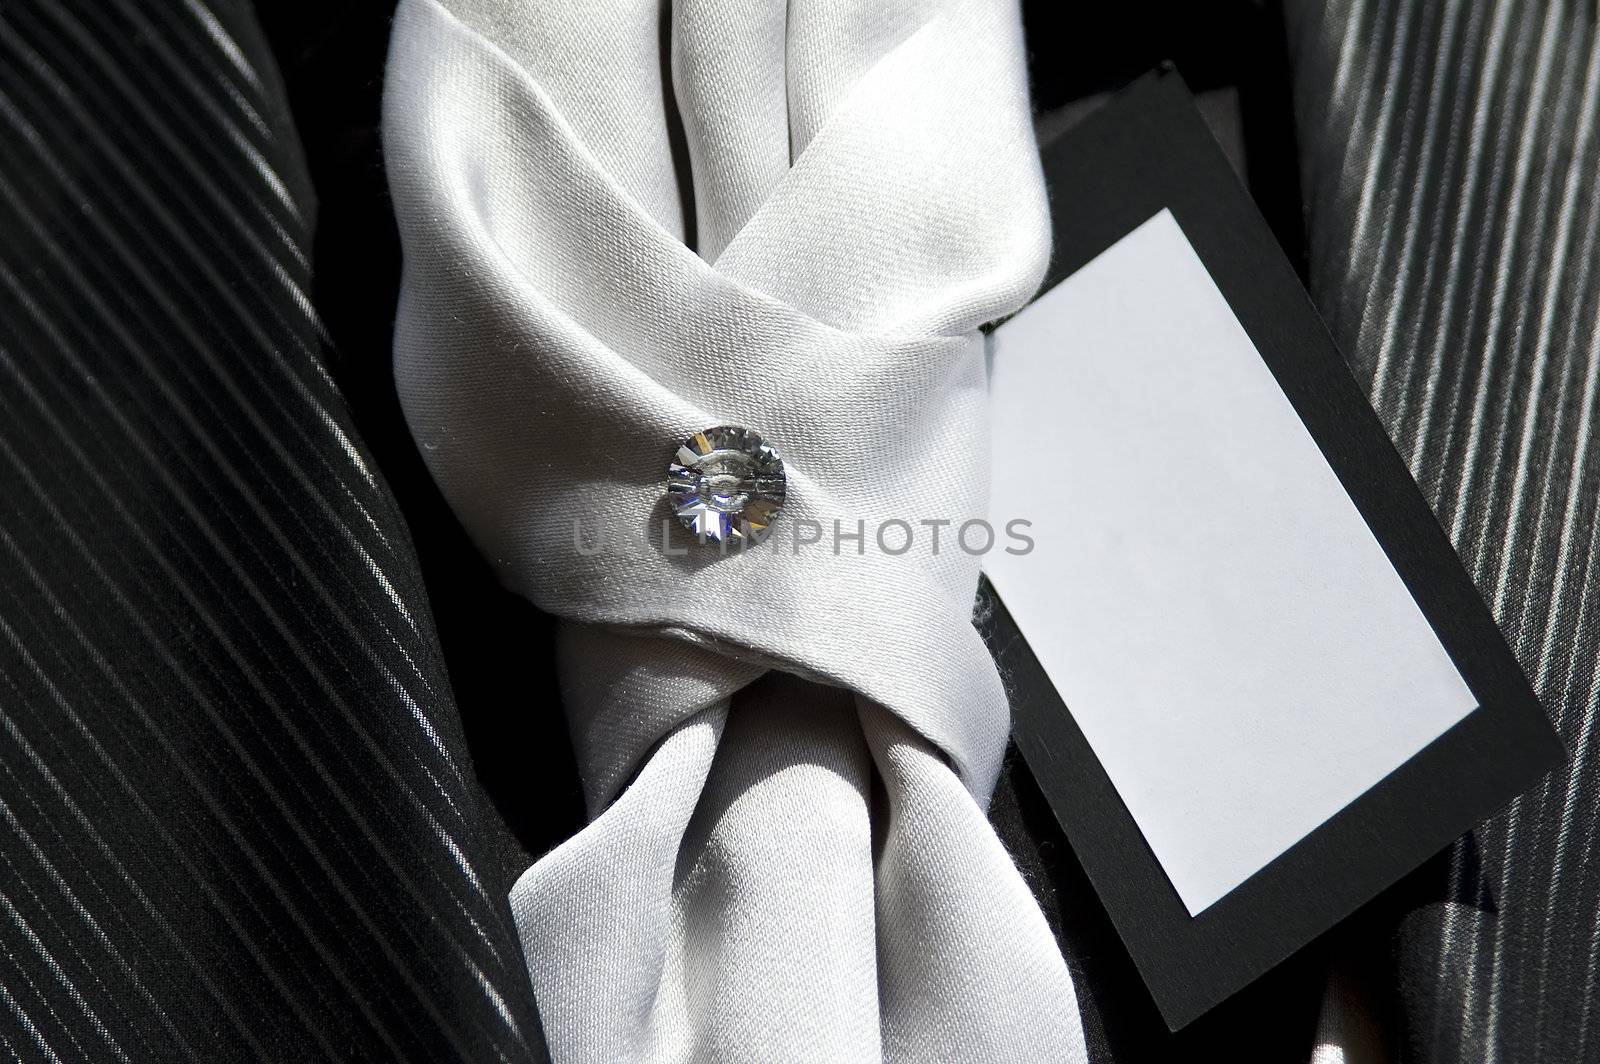 A diamond on a tie